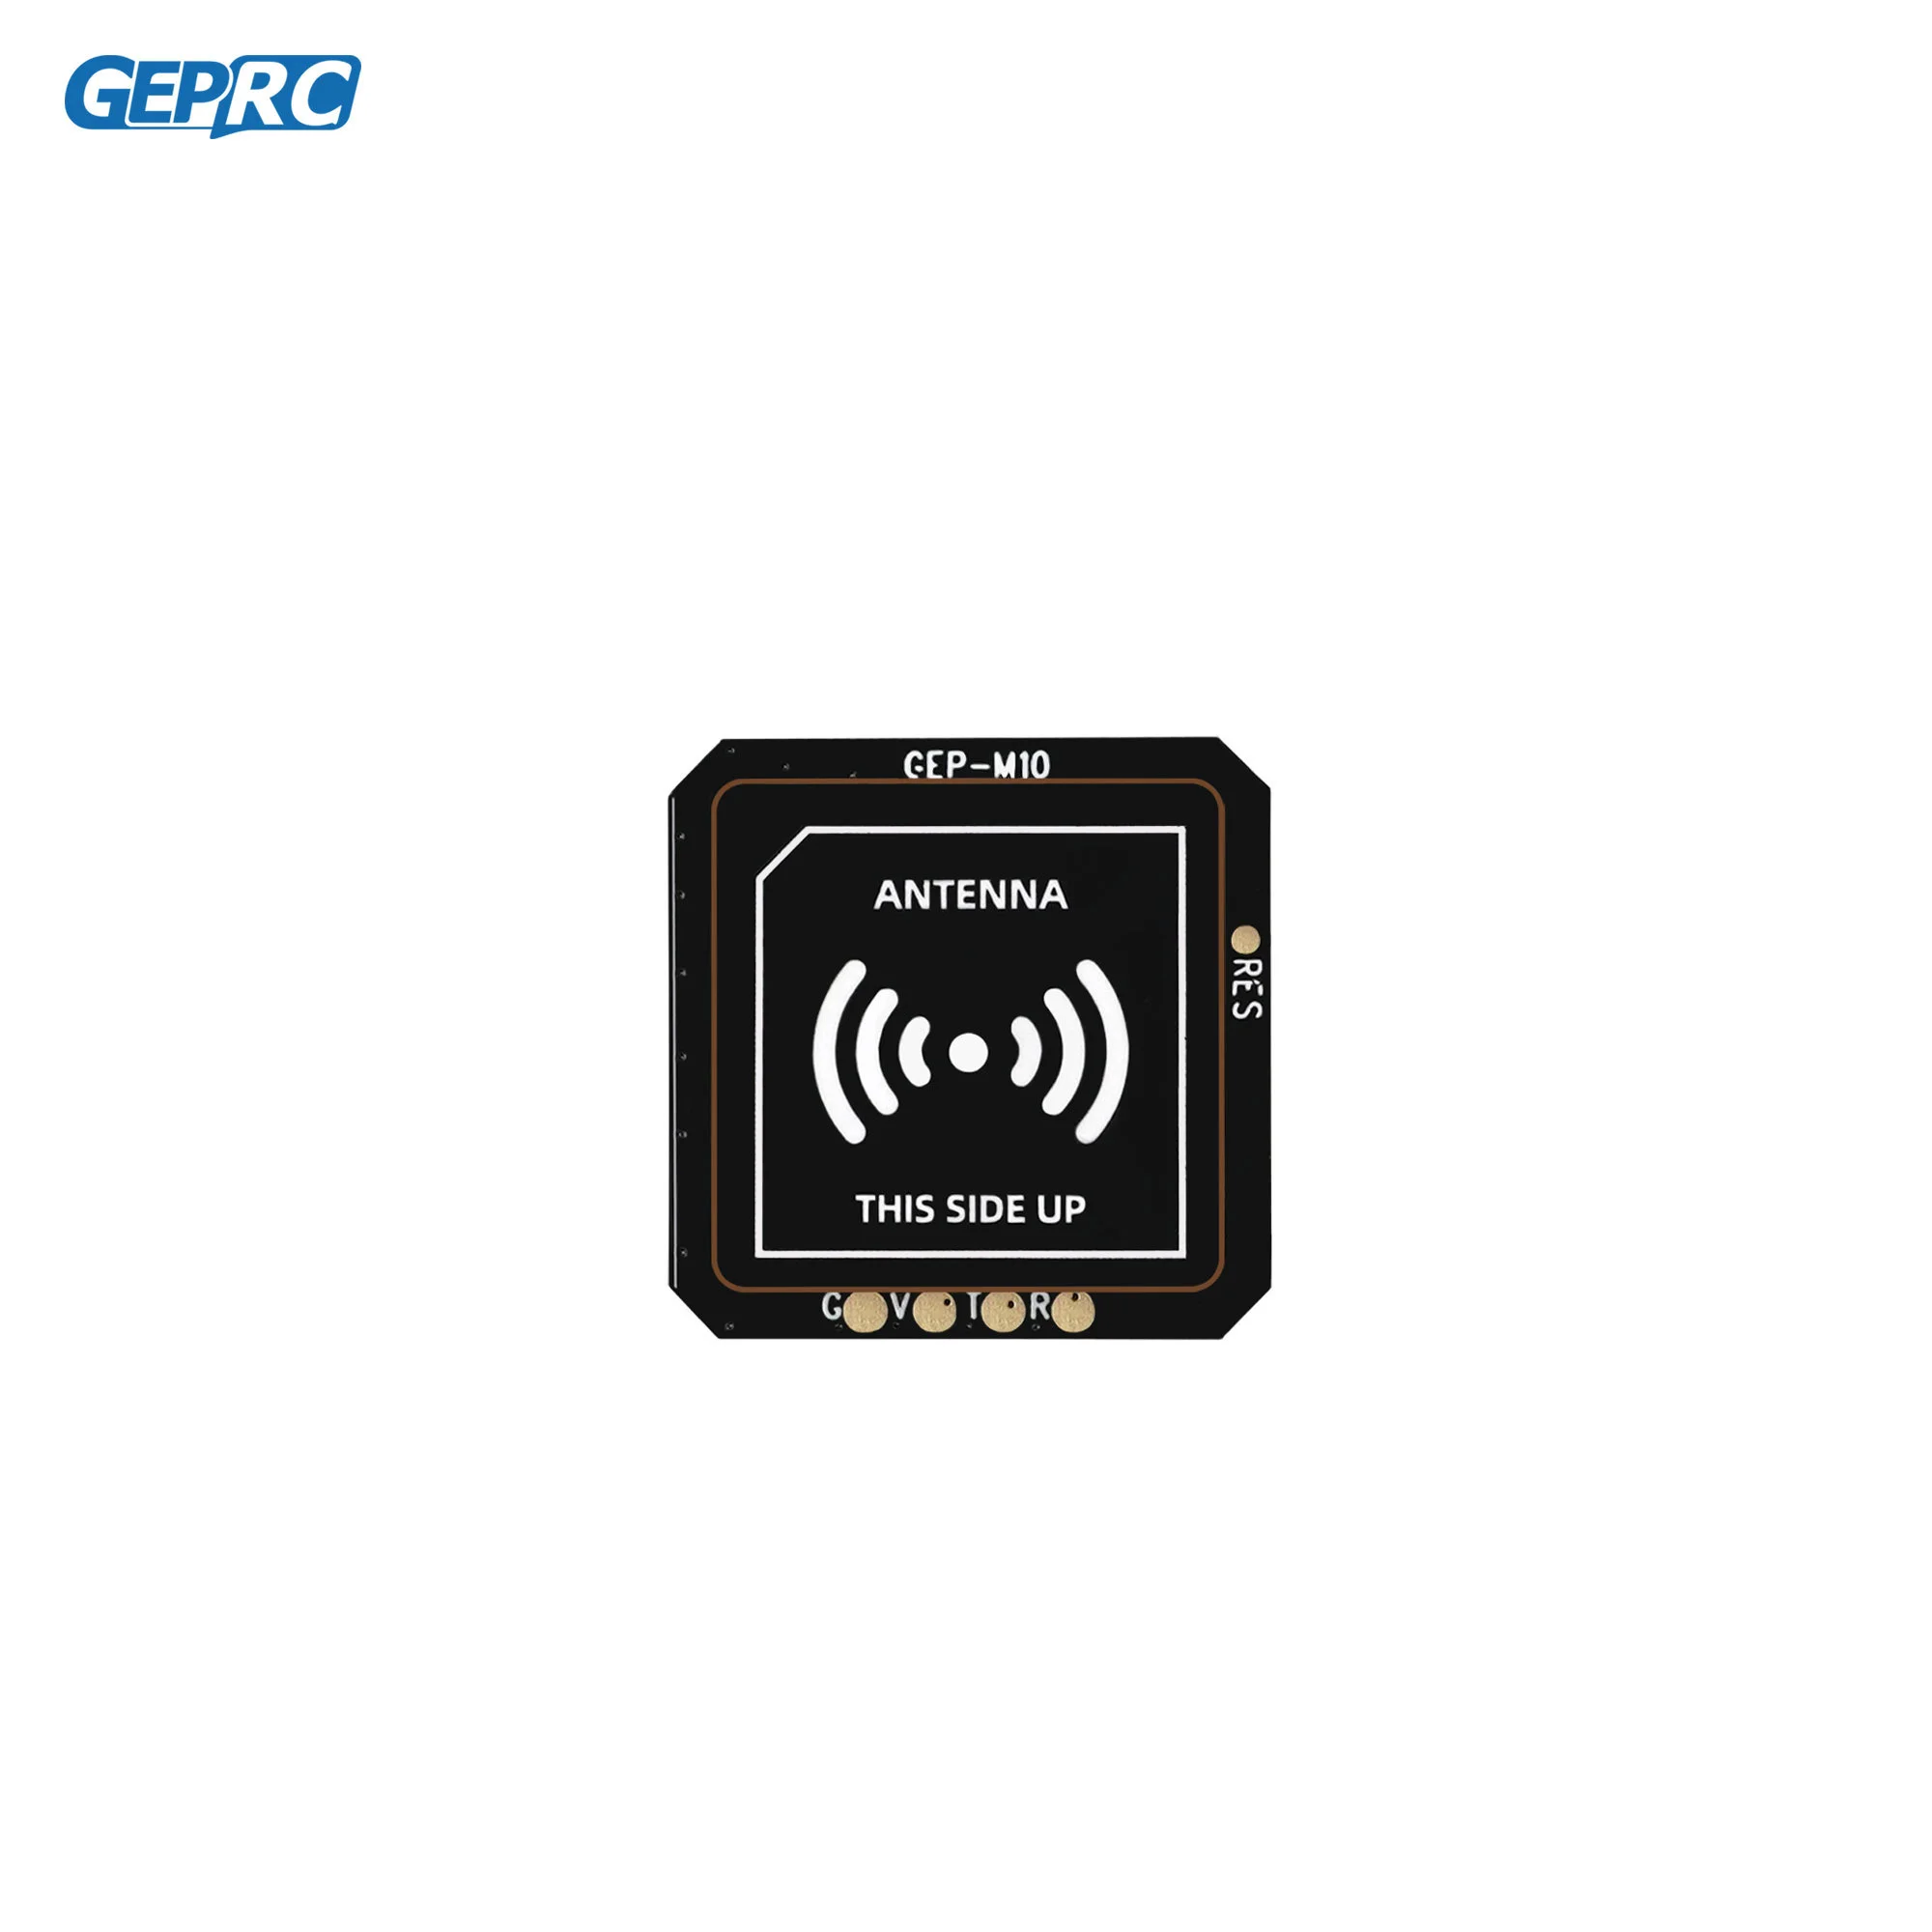 GEPRC GEP-M10 GPS Module